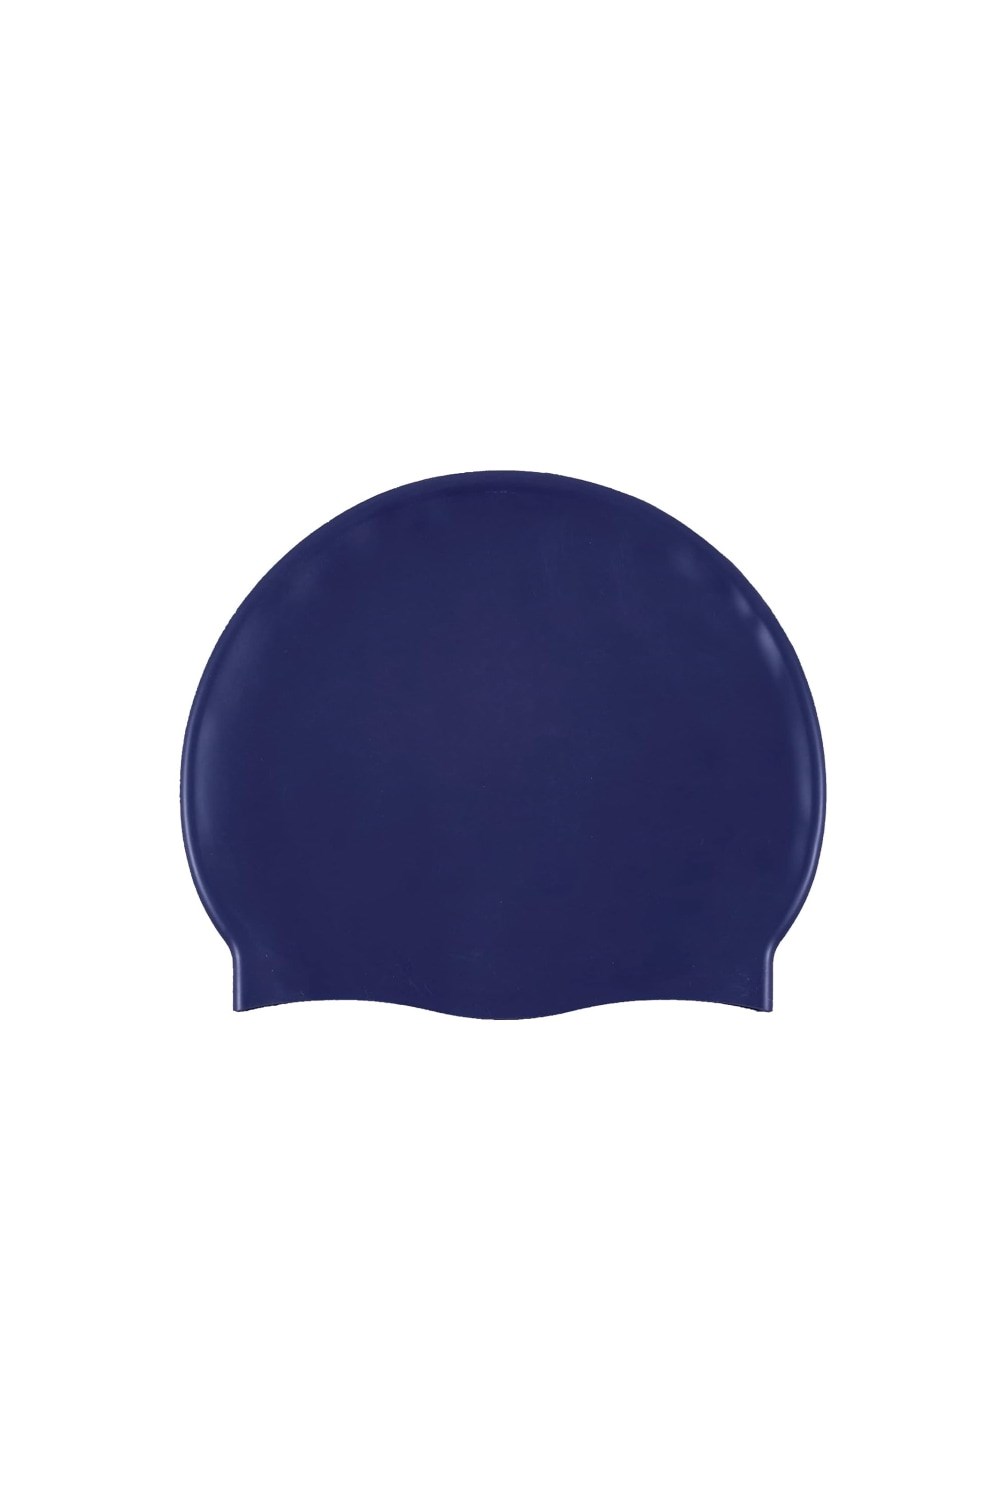 Unisex Adult Classic Silicone Swim Cap -